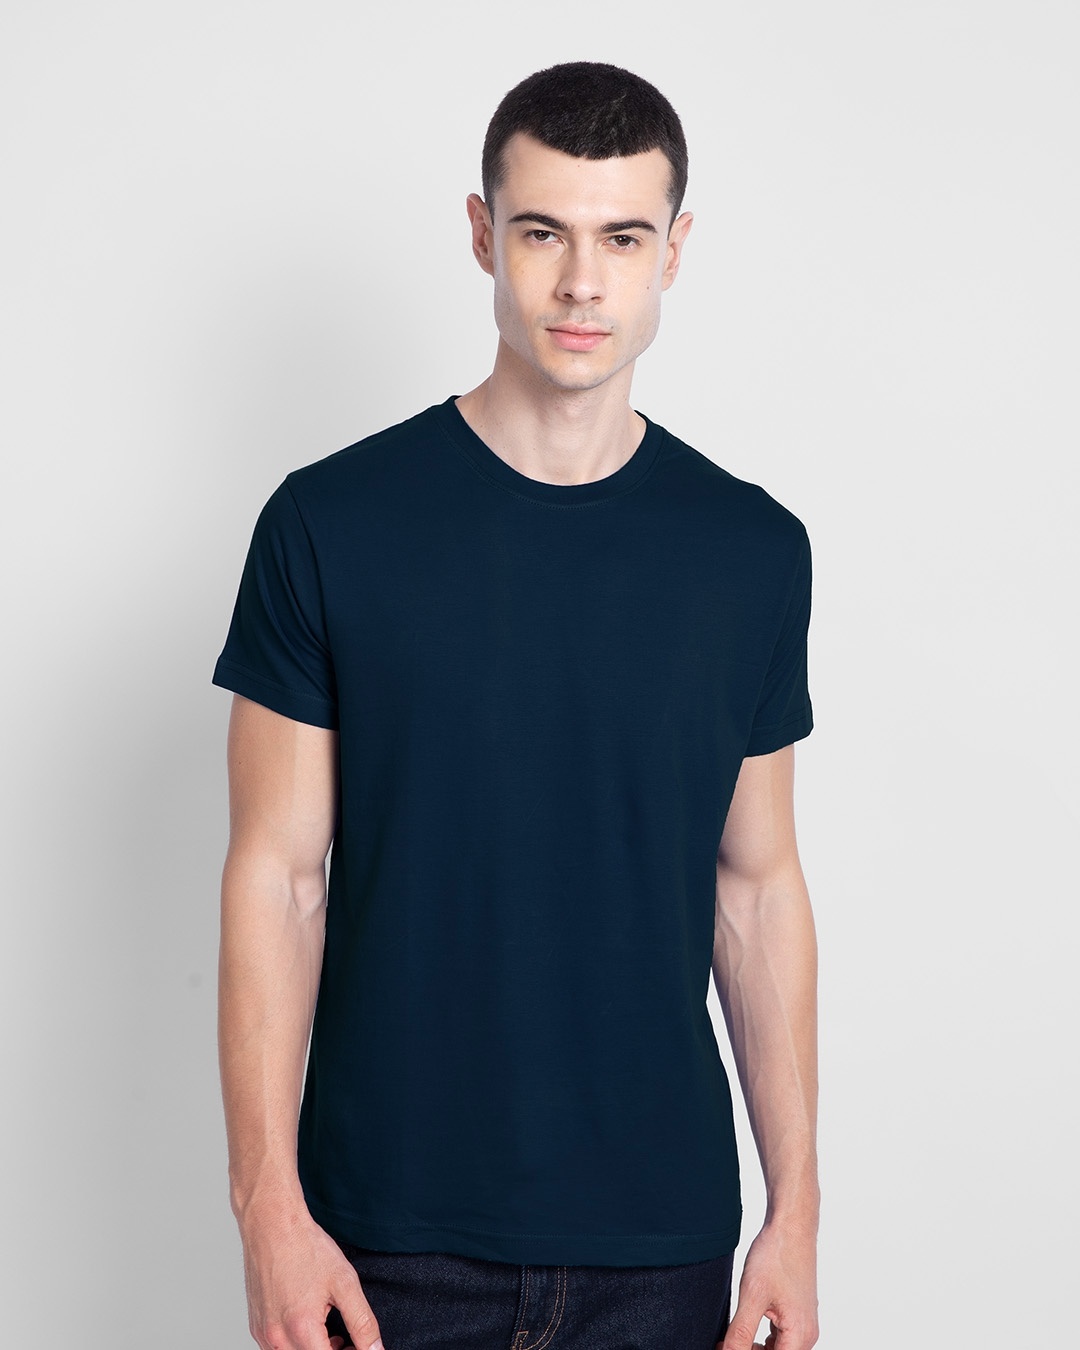 Shop Men's Black and Blue T-shirt Pack of 2-Design